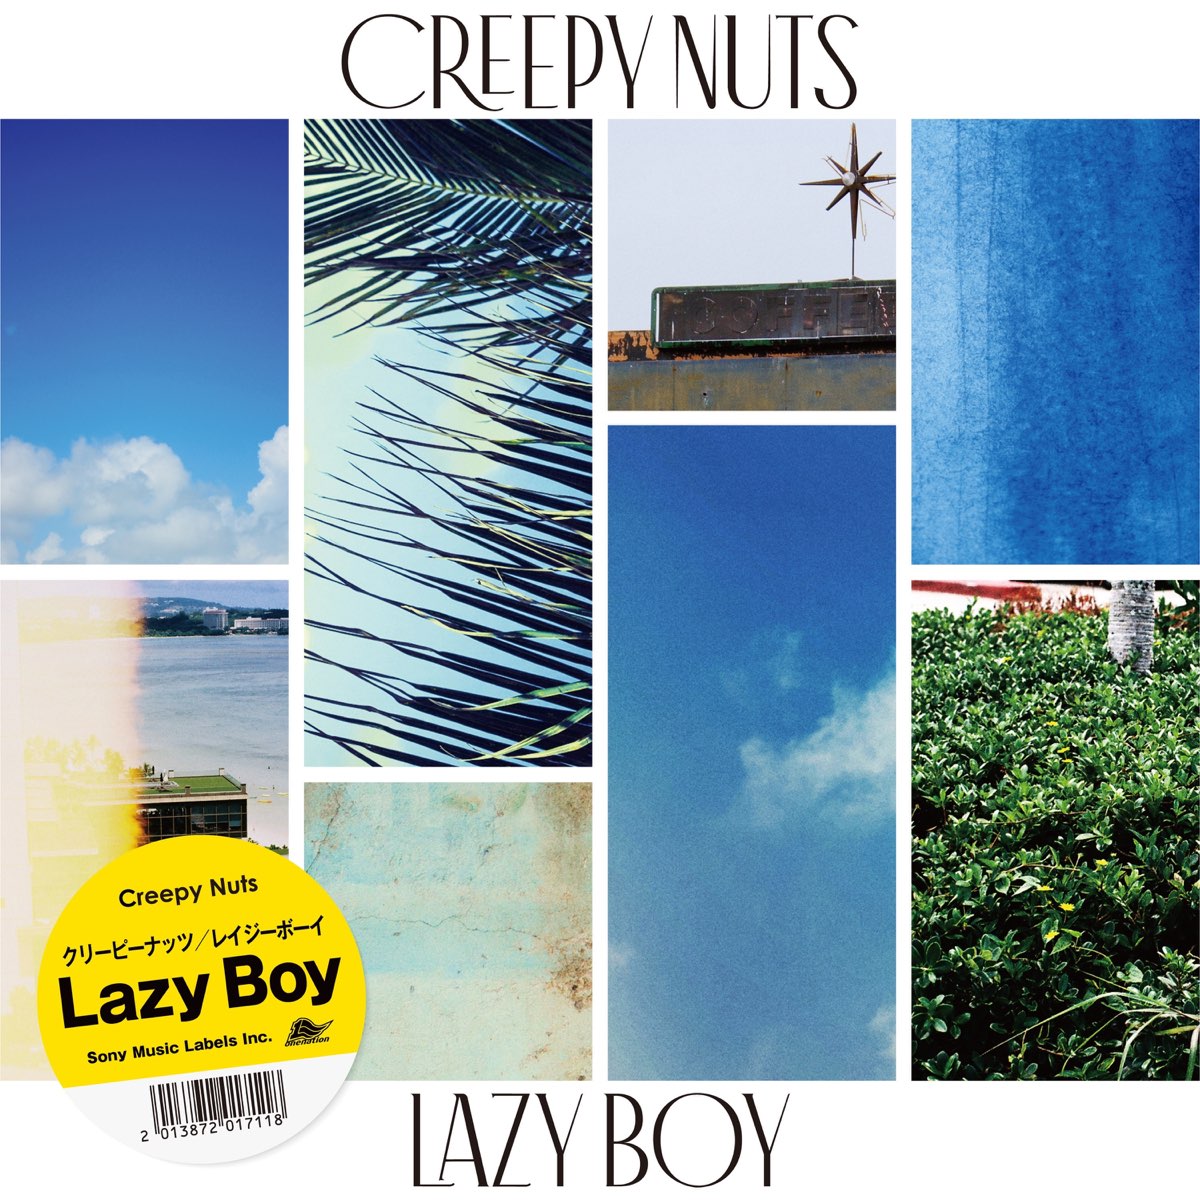 Creepy Nuts альбомы. Lazy boy. Creepy Nuts группа. Стих Lazy boy.